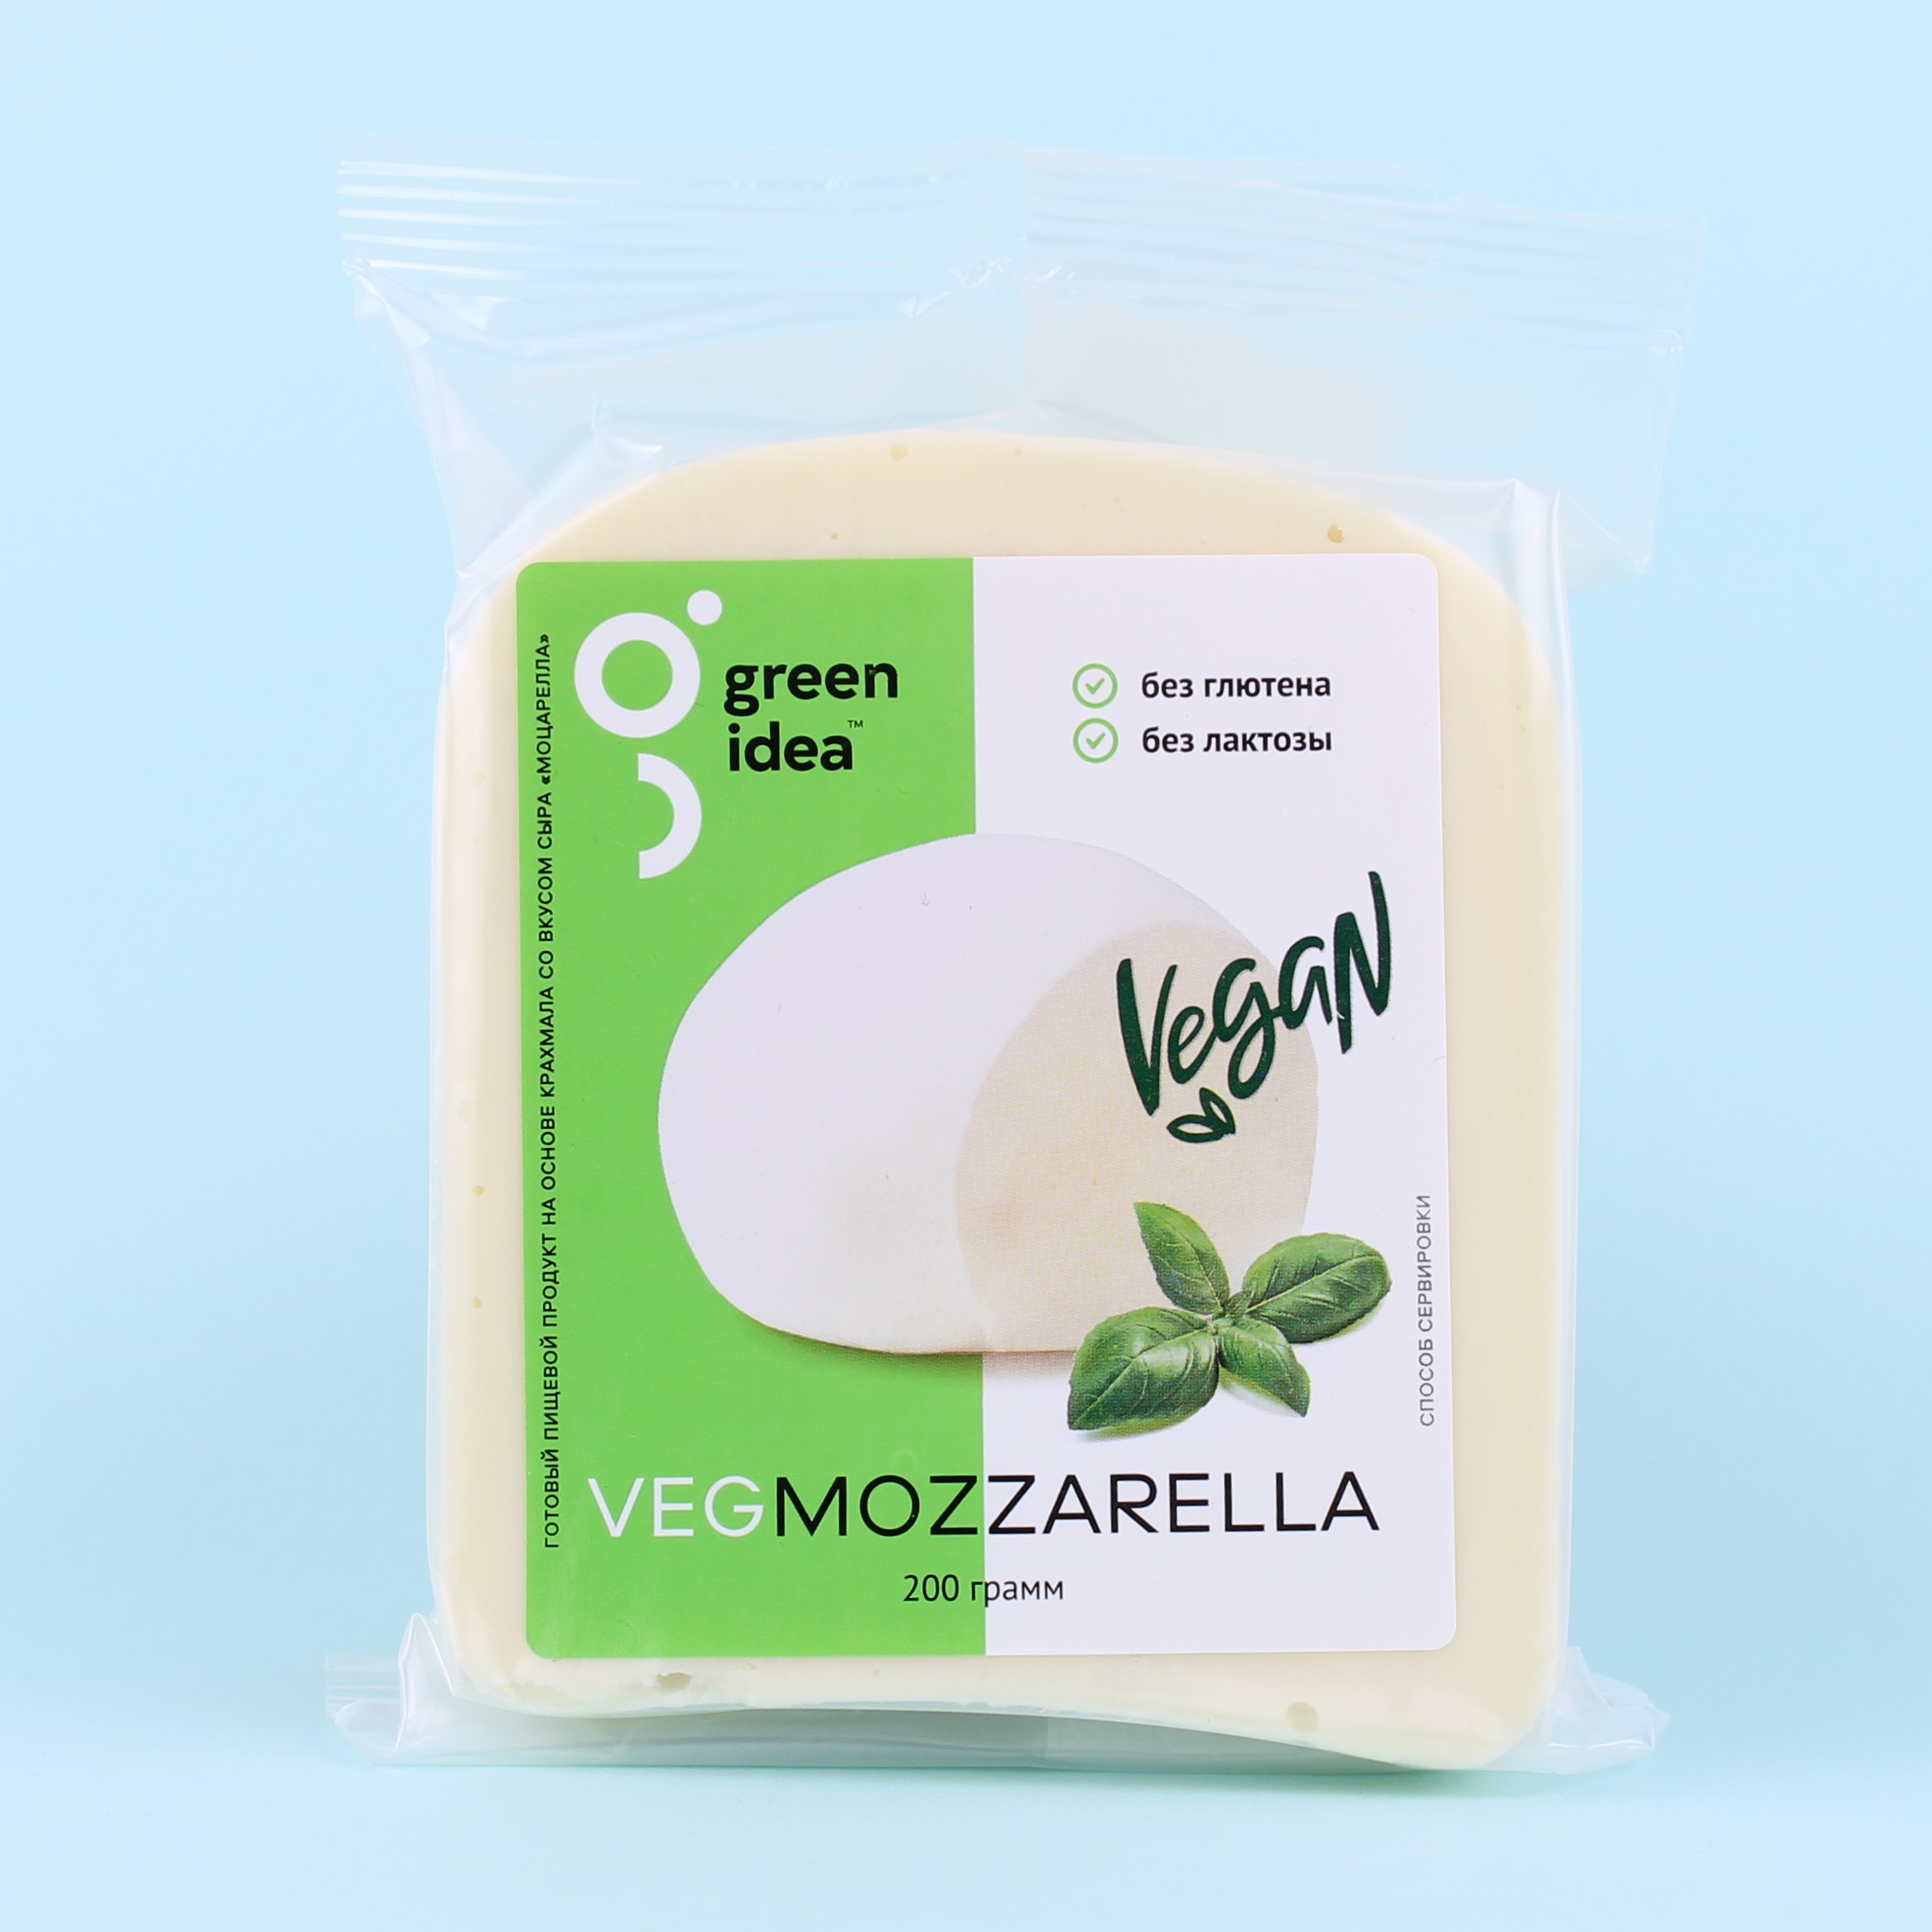 Моцарелла вкусвилл. Моцарелла Пикколо. Растительный сыр Green idea 200г моцарелла тертый. Сыр моцарелла Vegan 200г Green. Сыр мягкий моцарелла.